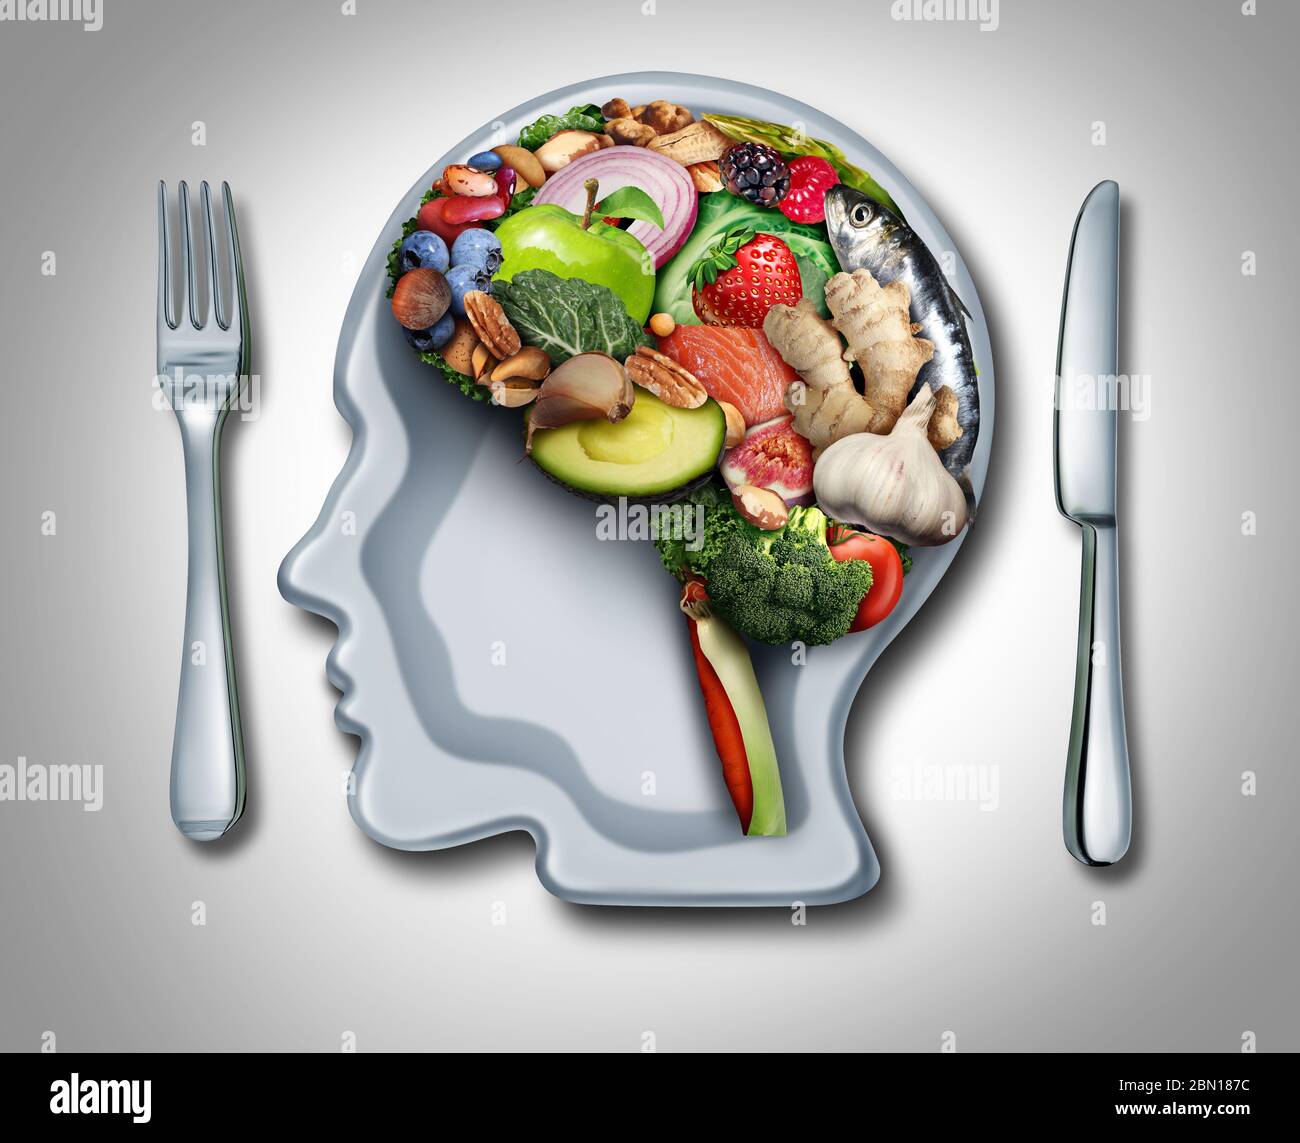 Dieta cerebrale e psicologia alimentare o psichiatria nutrizionale come cibo sano modellato come organo pensante con un piatto a forma di testa umana. Foto Stock